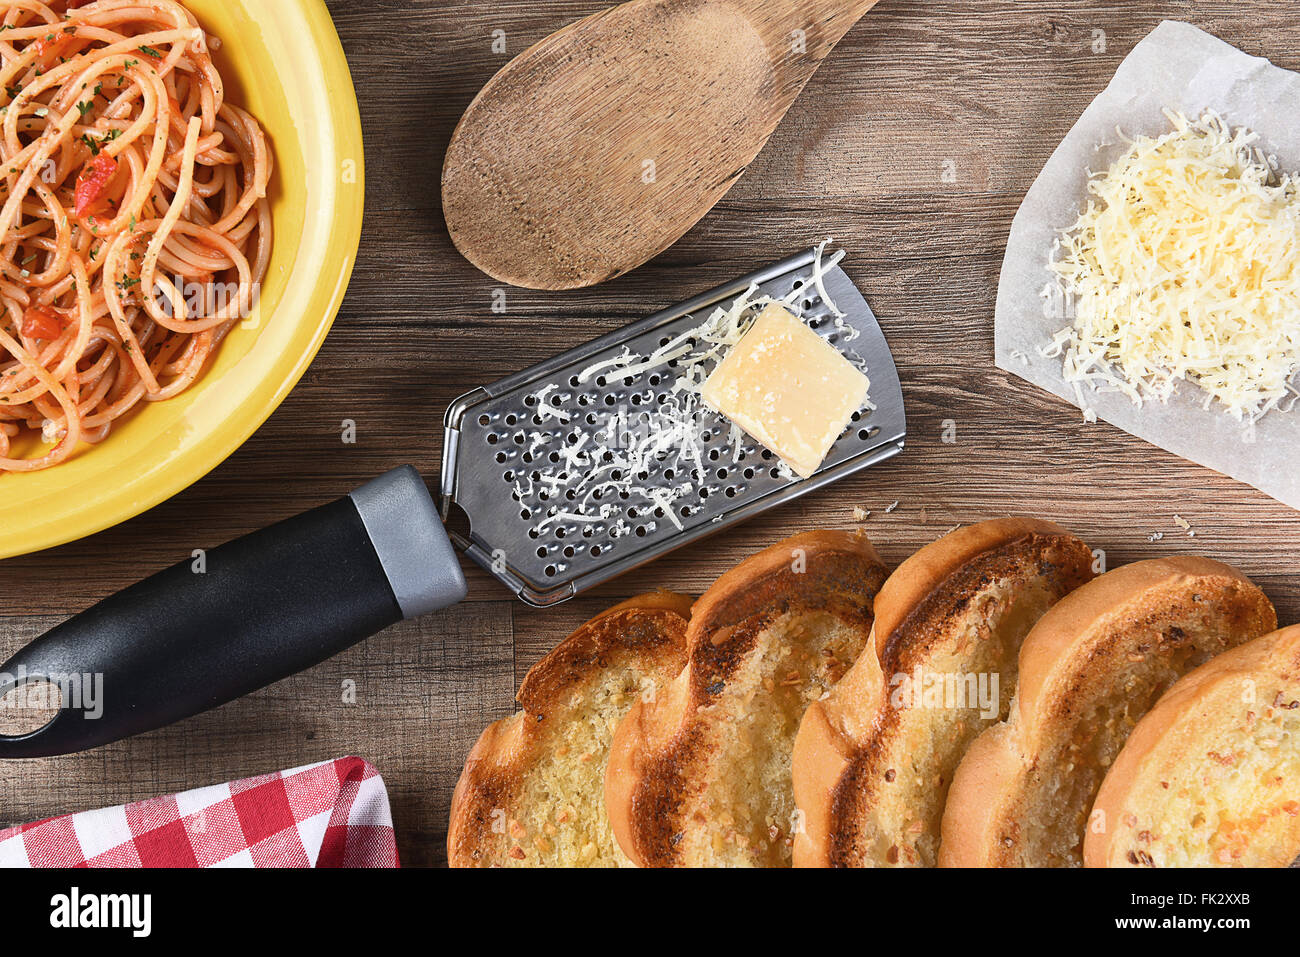 Vista aerea di un tavolo da cucina con un piatto di spaghetti, pane all'aglio, parmigiano grattugiato, una grattugia, cucchiaio di legno, un rosso ch Foto Stock